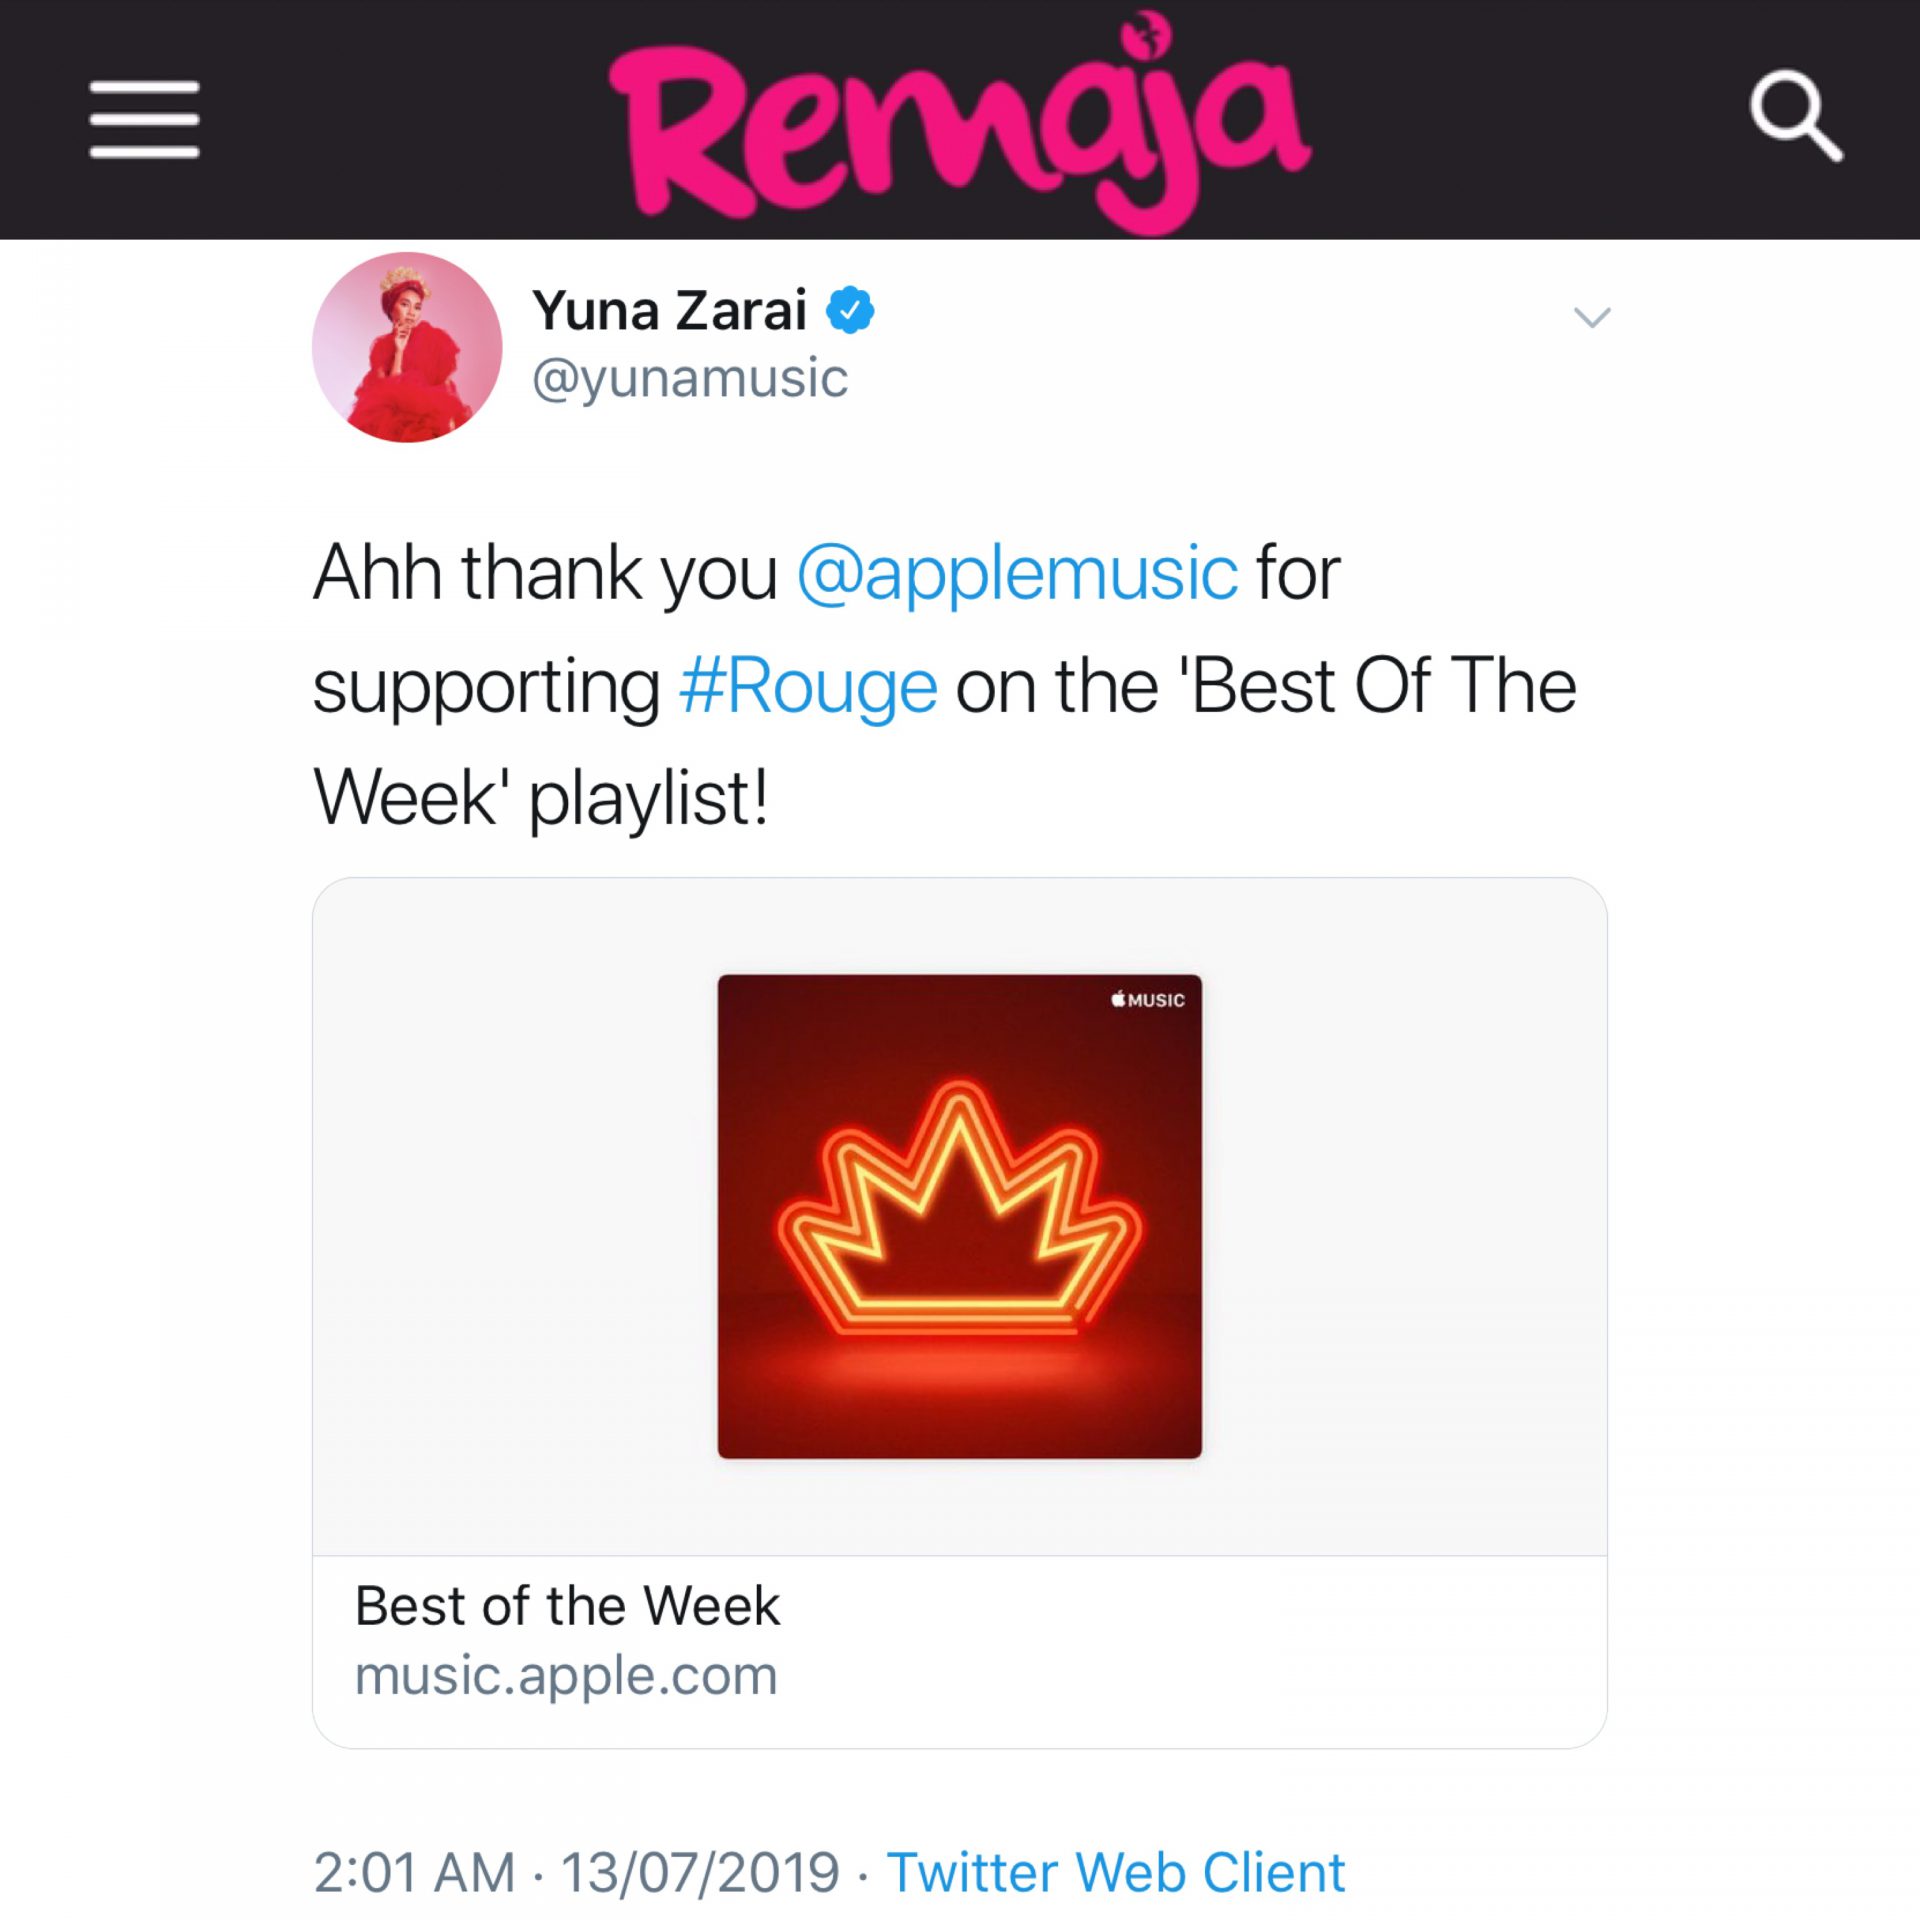 Album Yuna ‘Rouge’ Dapat Perhatian Forbes, Billboard &#038; Media Barat Selepas Sehari Dilancar